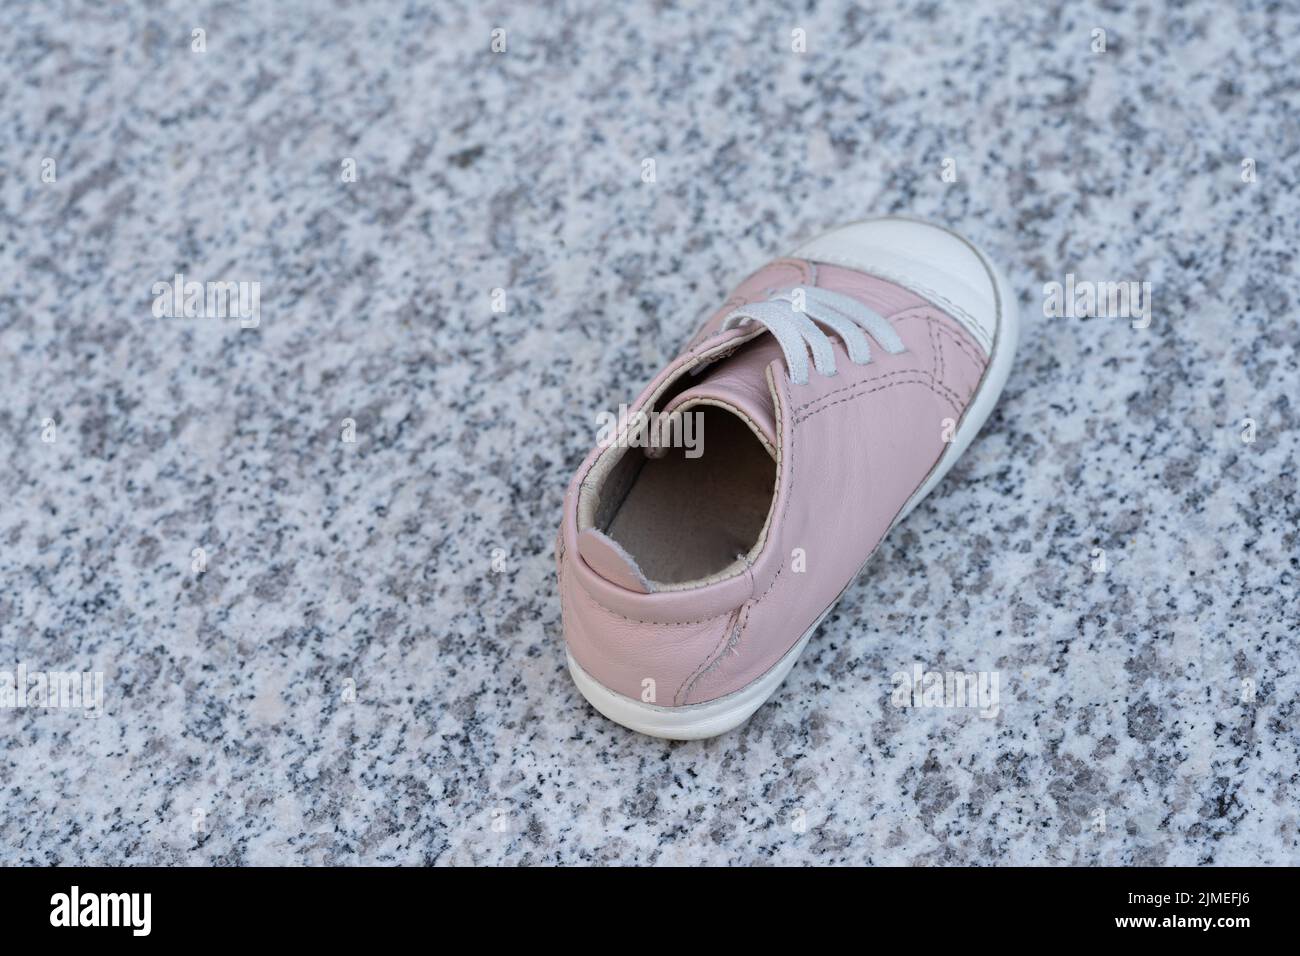 Ein rosa Babyschuh auf einem Marmorhintergrund. Einfach von jemandem verloren oder des Kindesmissbrauchs oder der Entführung verdächtigt Stockfoto